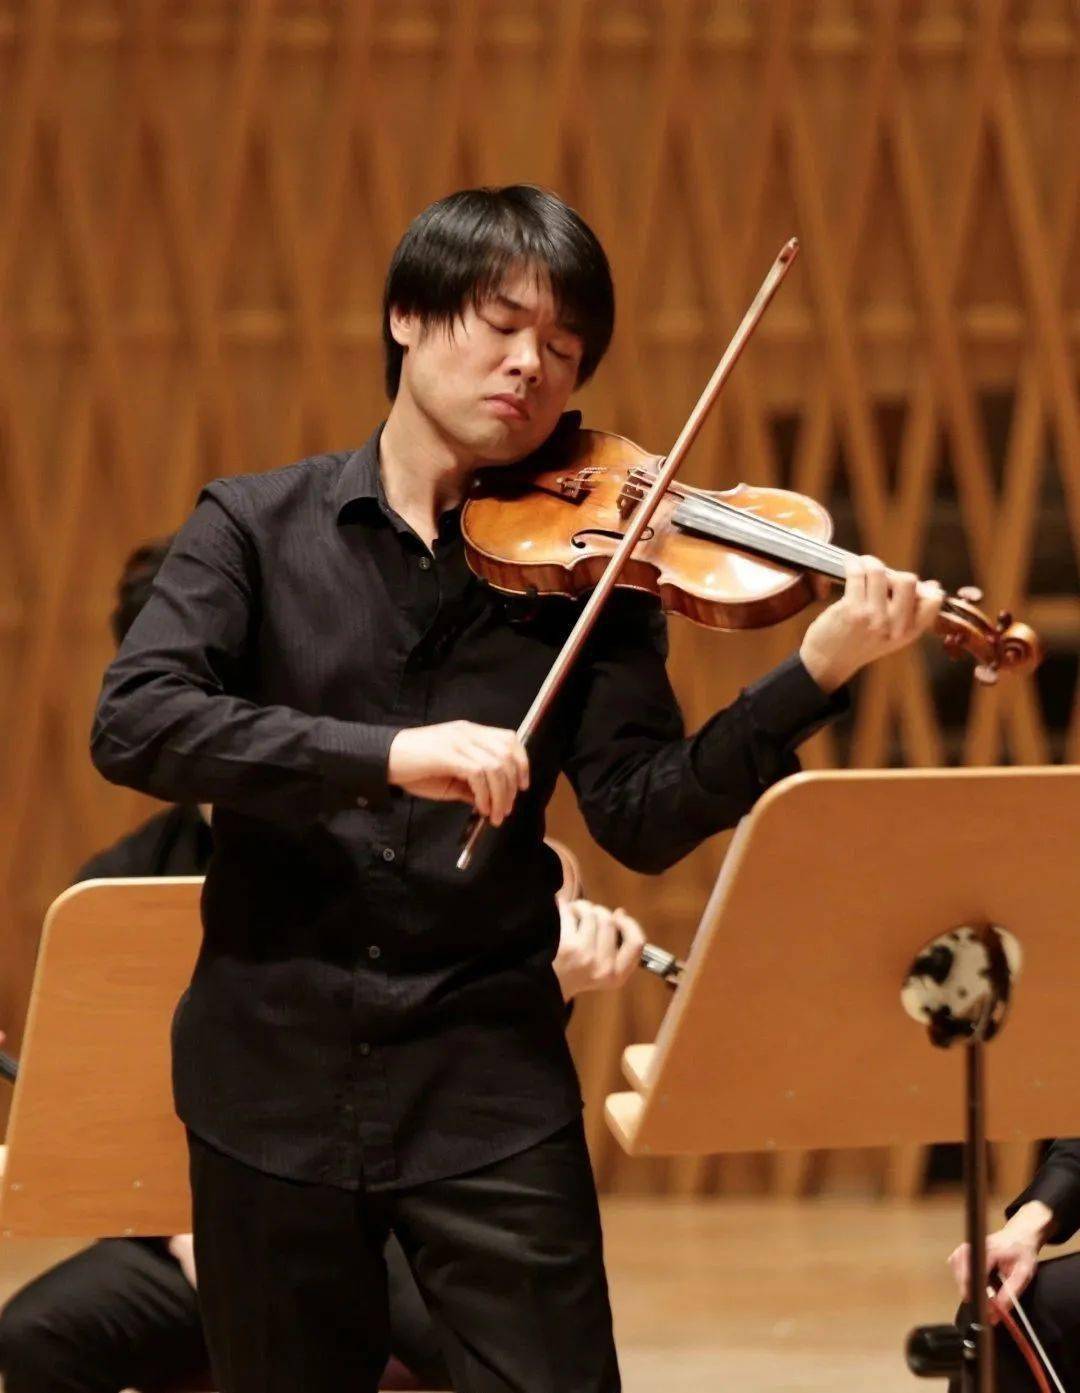 黄蒙拉:他把贝多芬《小提琴协奏曲》改编得比较雅致,把定音鼓和管乐